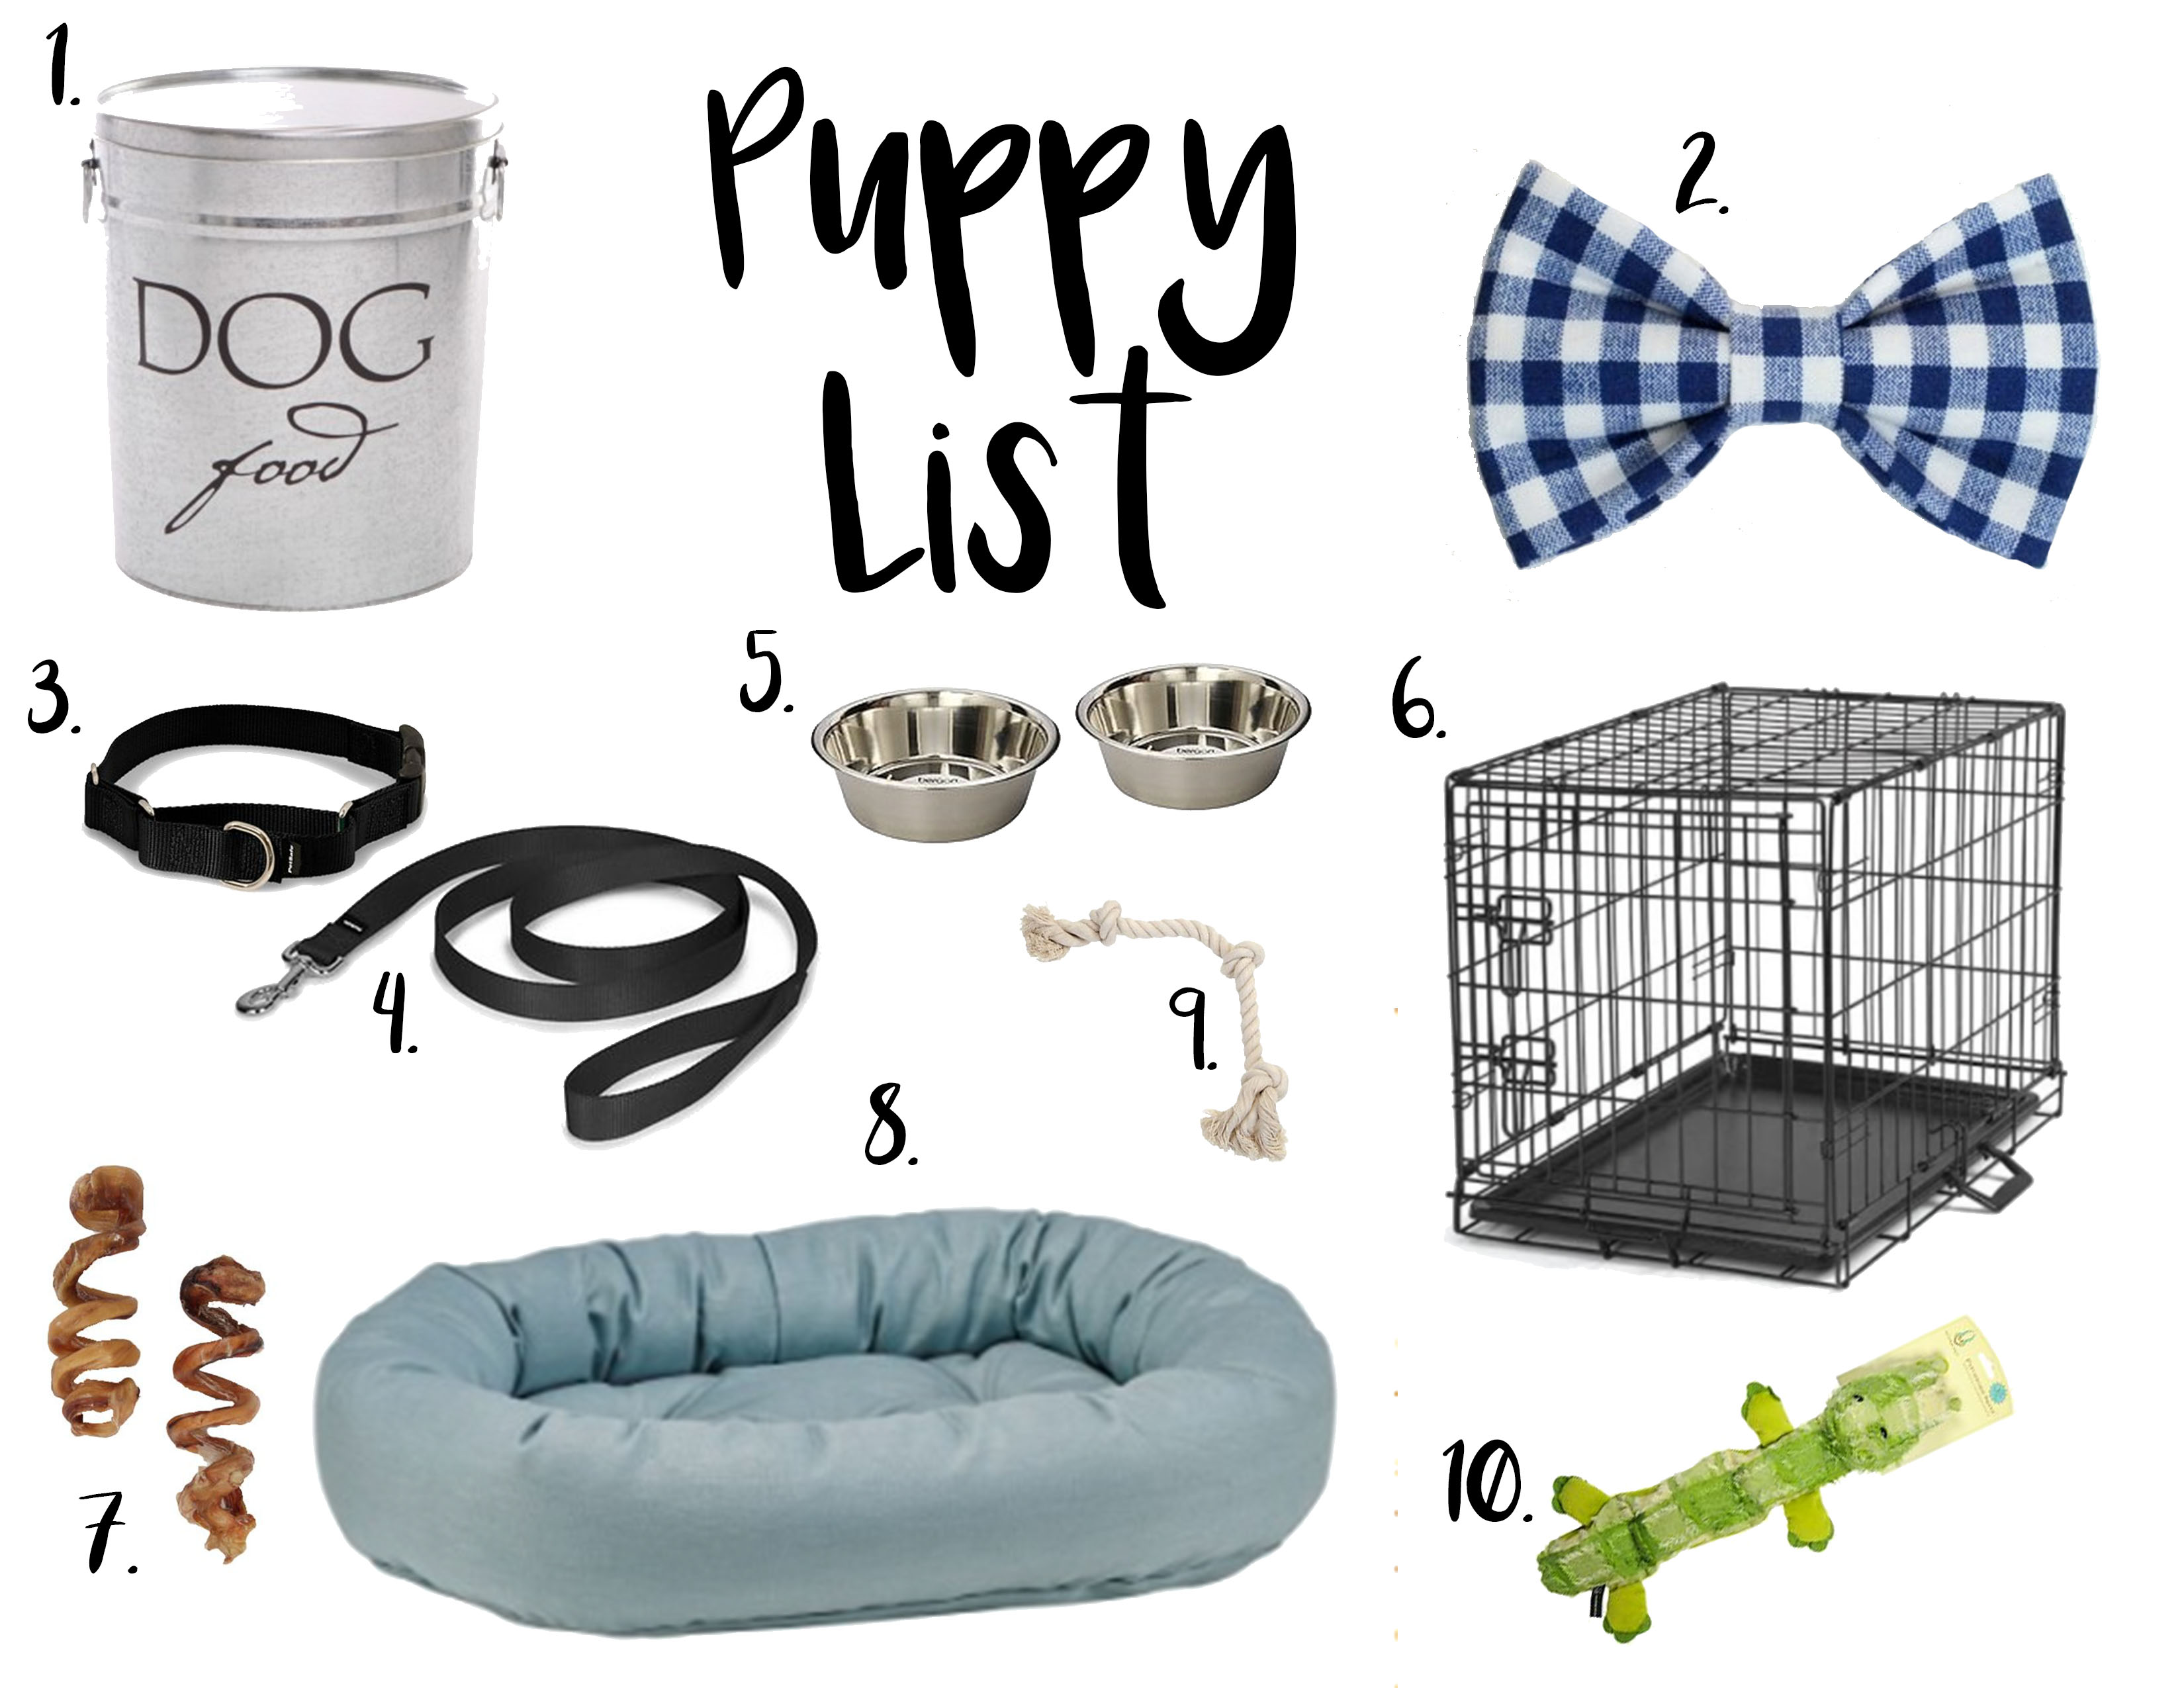 Puppy List